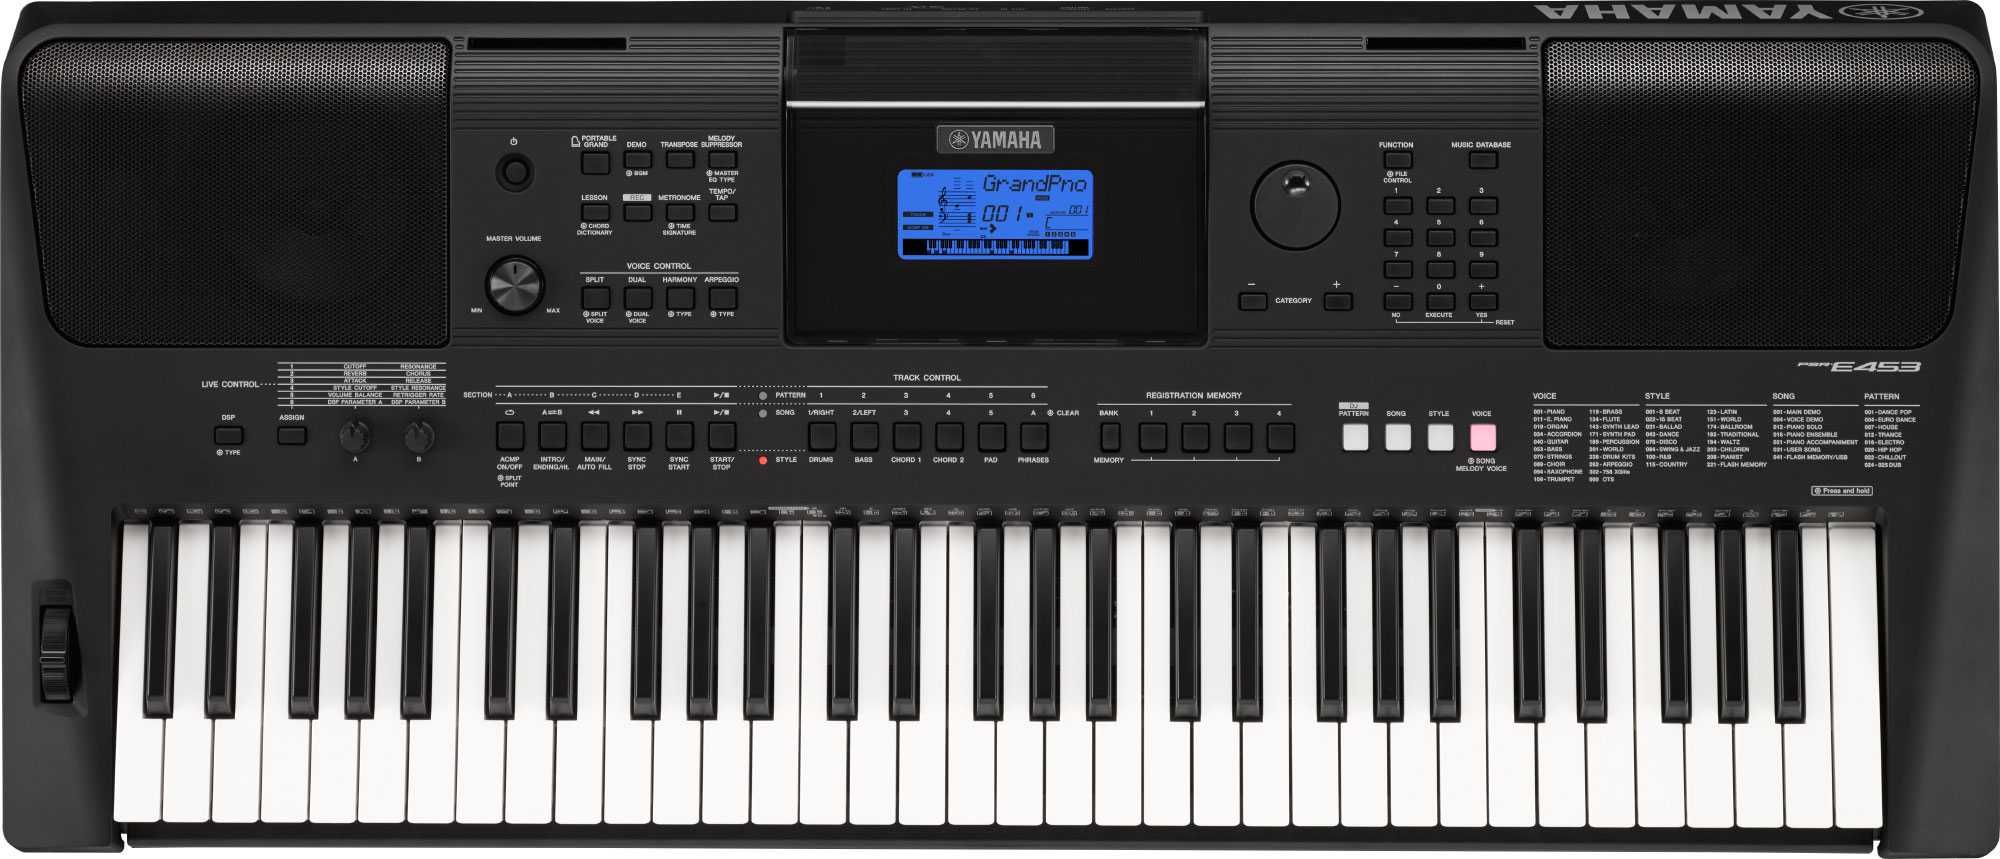 Ritmuri orga Yamaha PSR-E 403,413,423,433,373 SX700,900